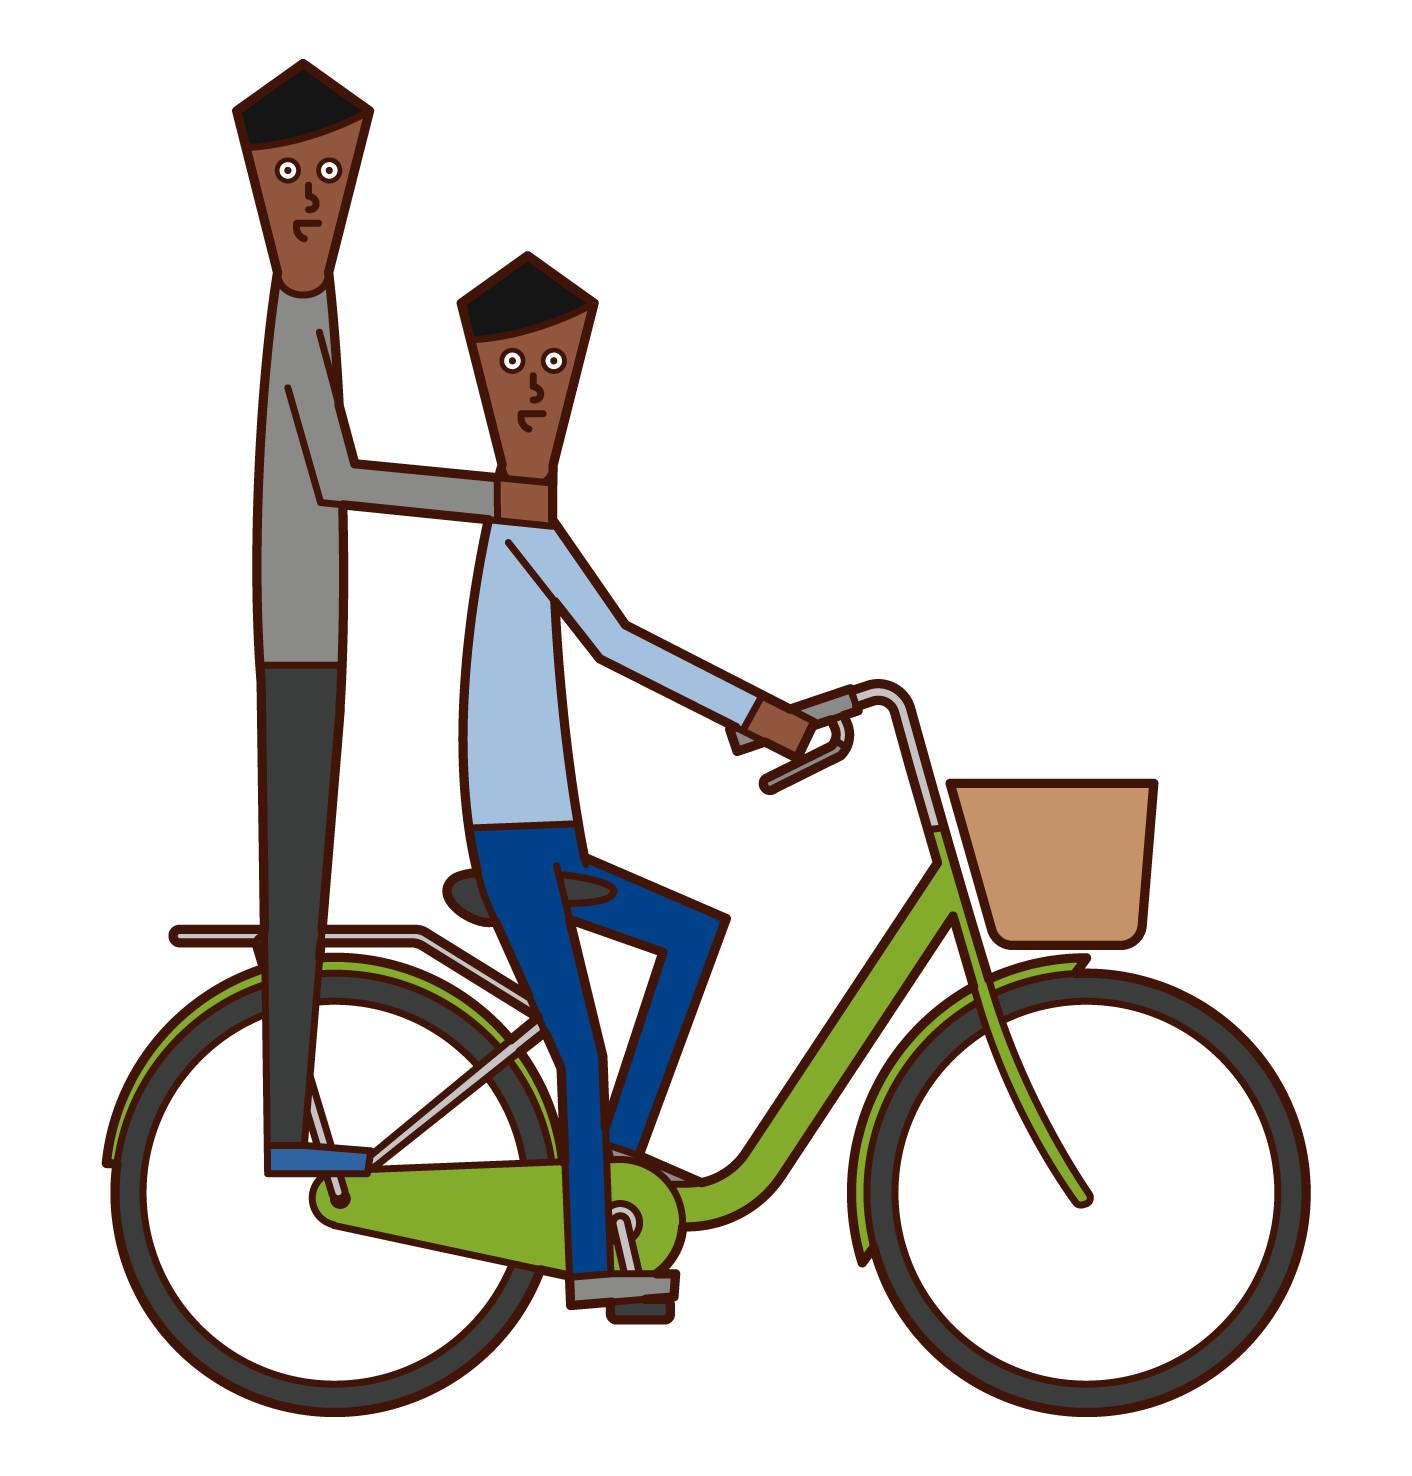 自転車に二人乗りする人たちのイラスト